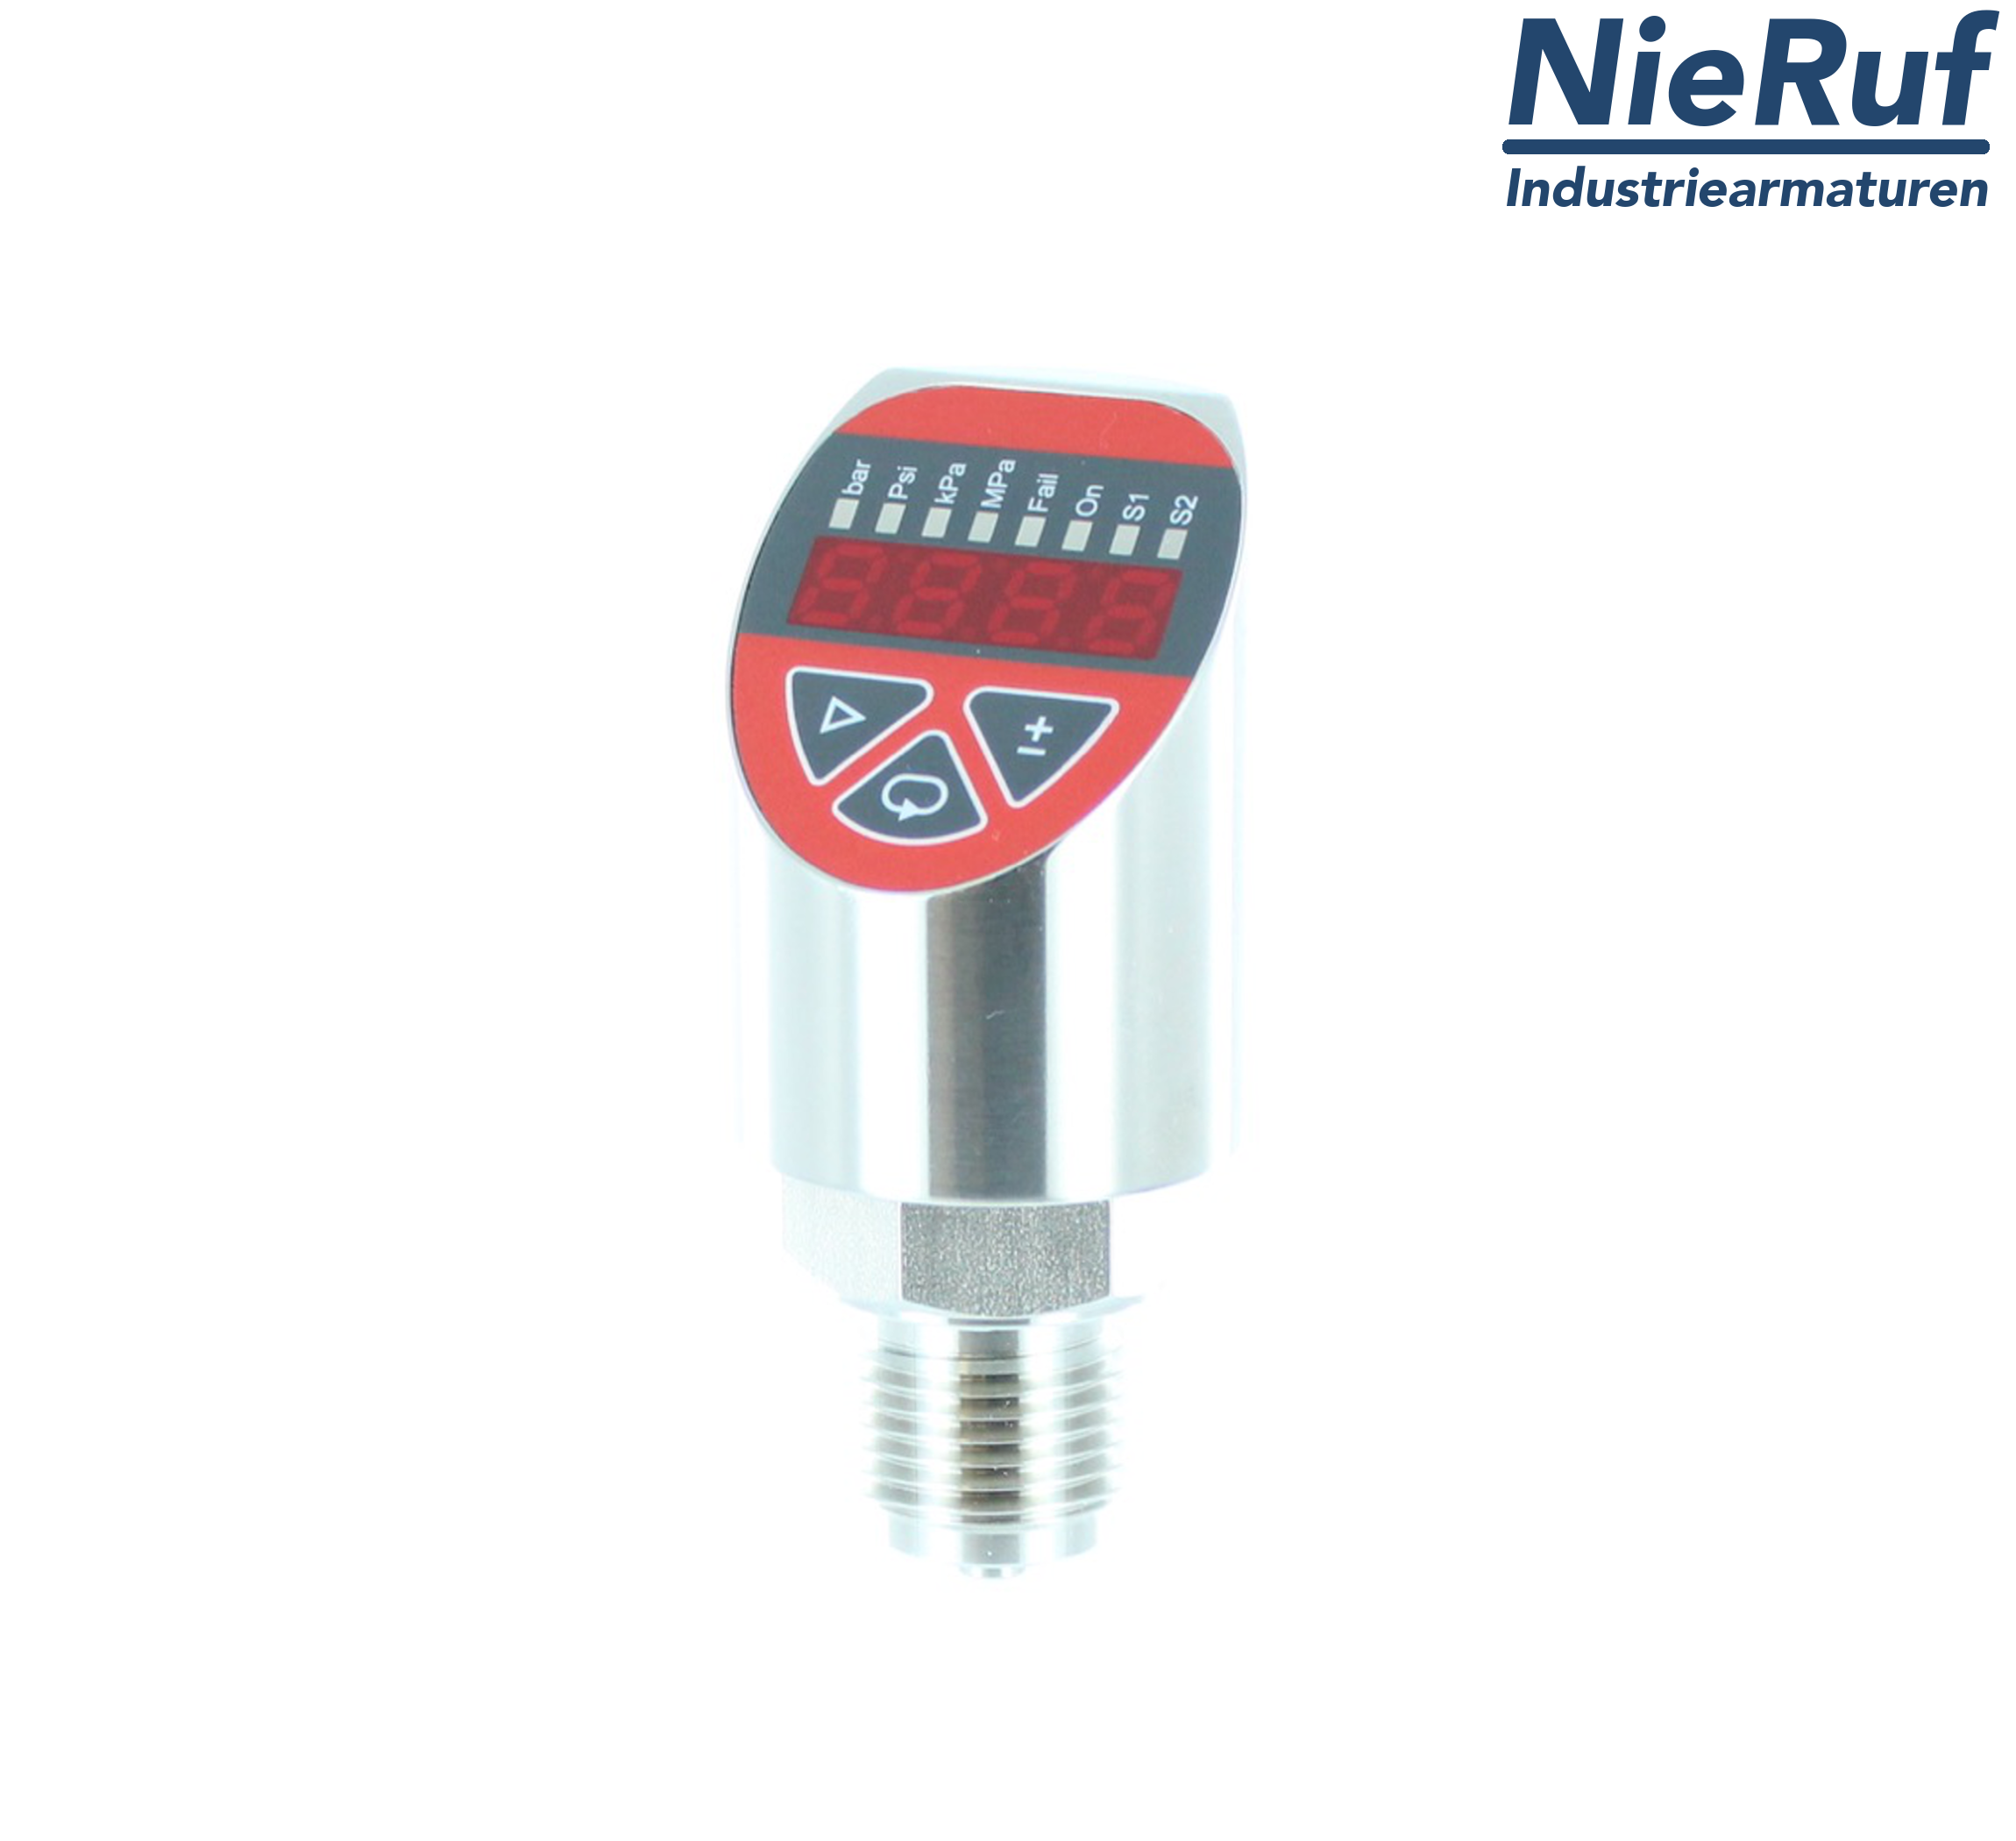 digital pressure sensor G 1/4" B 4-wire: 1xPNP, 1x4 - 20mA, Desina FPM 0,0 - 100,0 bar